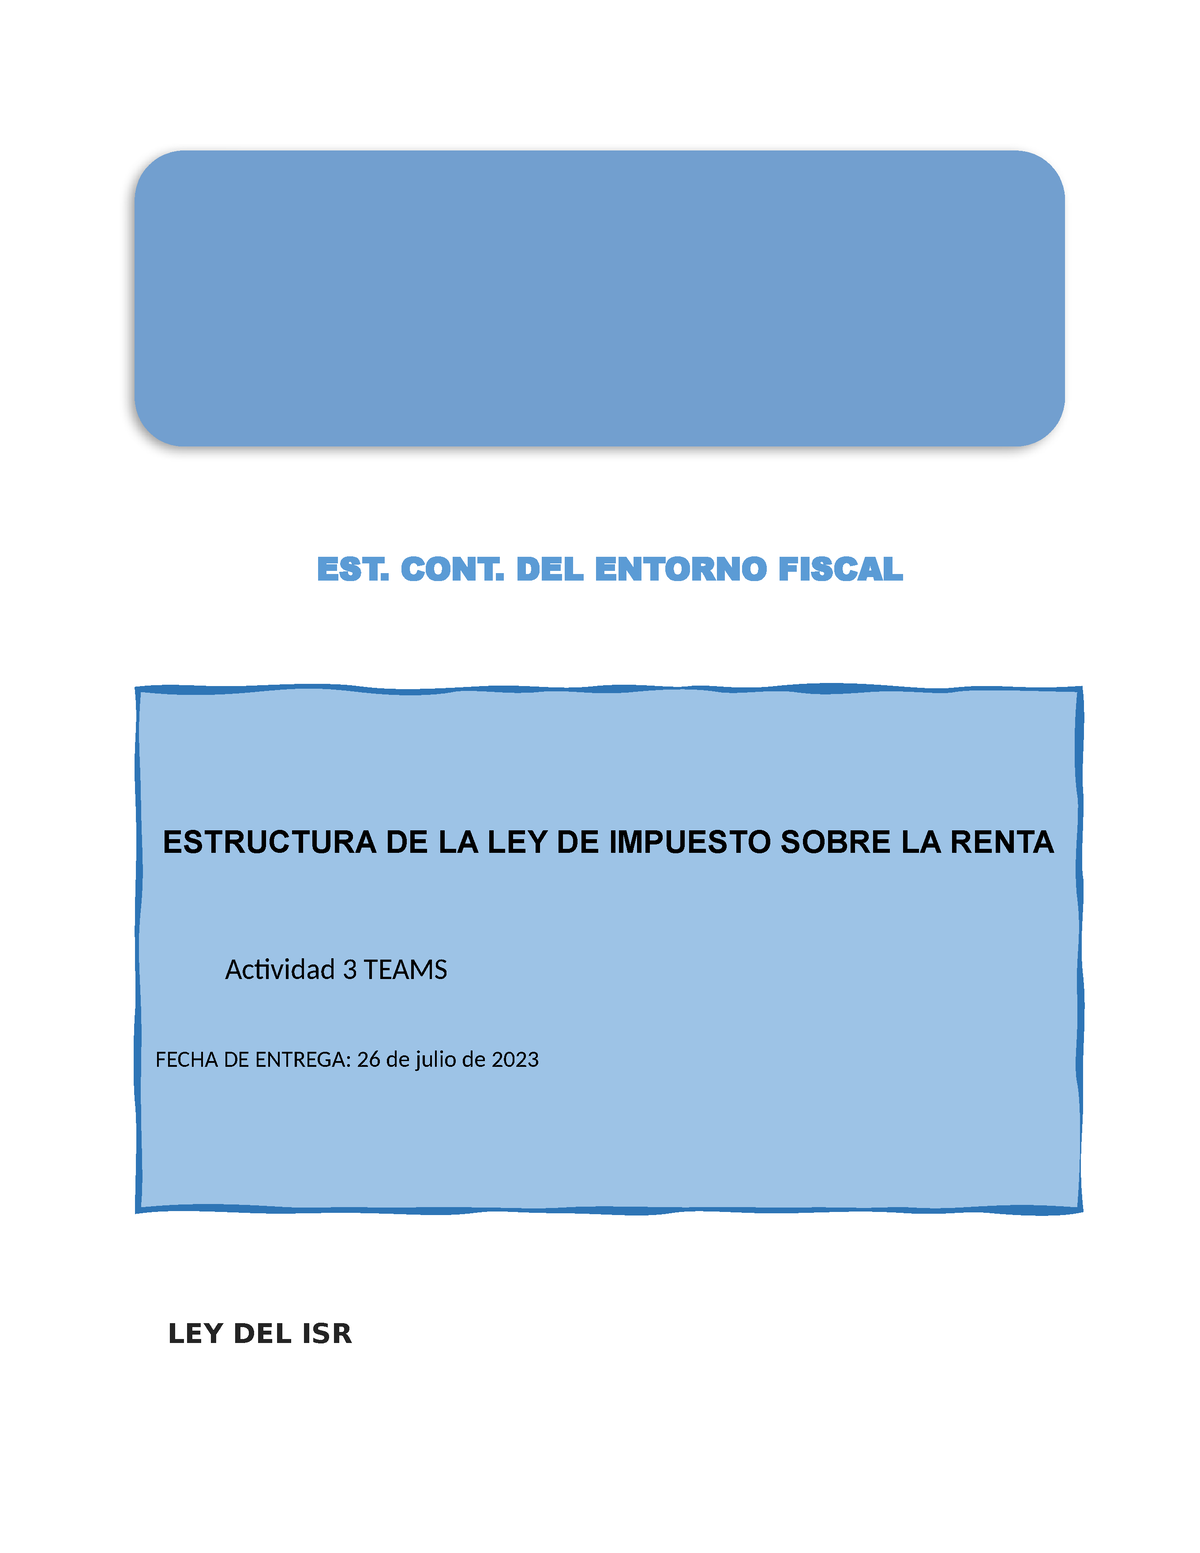 Estructura De La Ley De Isr Ley Del Isr Est Cont Del Entorno Fiscal Estructura De La Ley De 7335